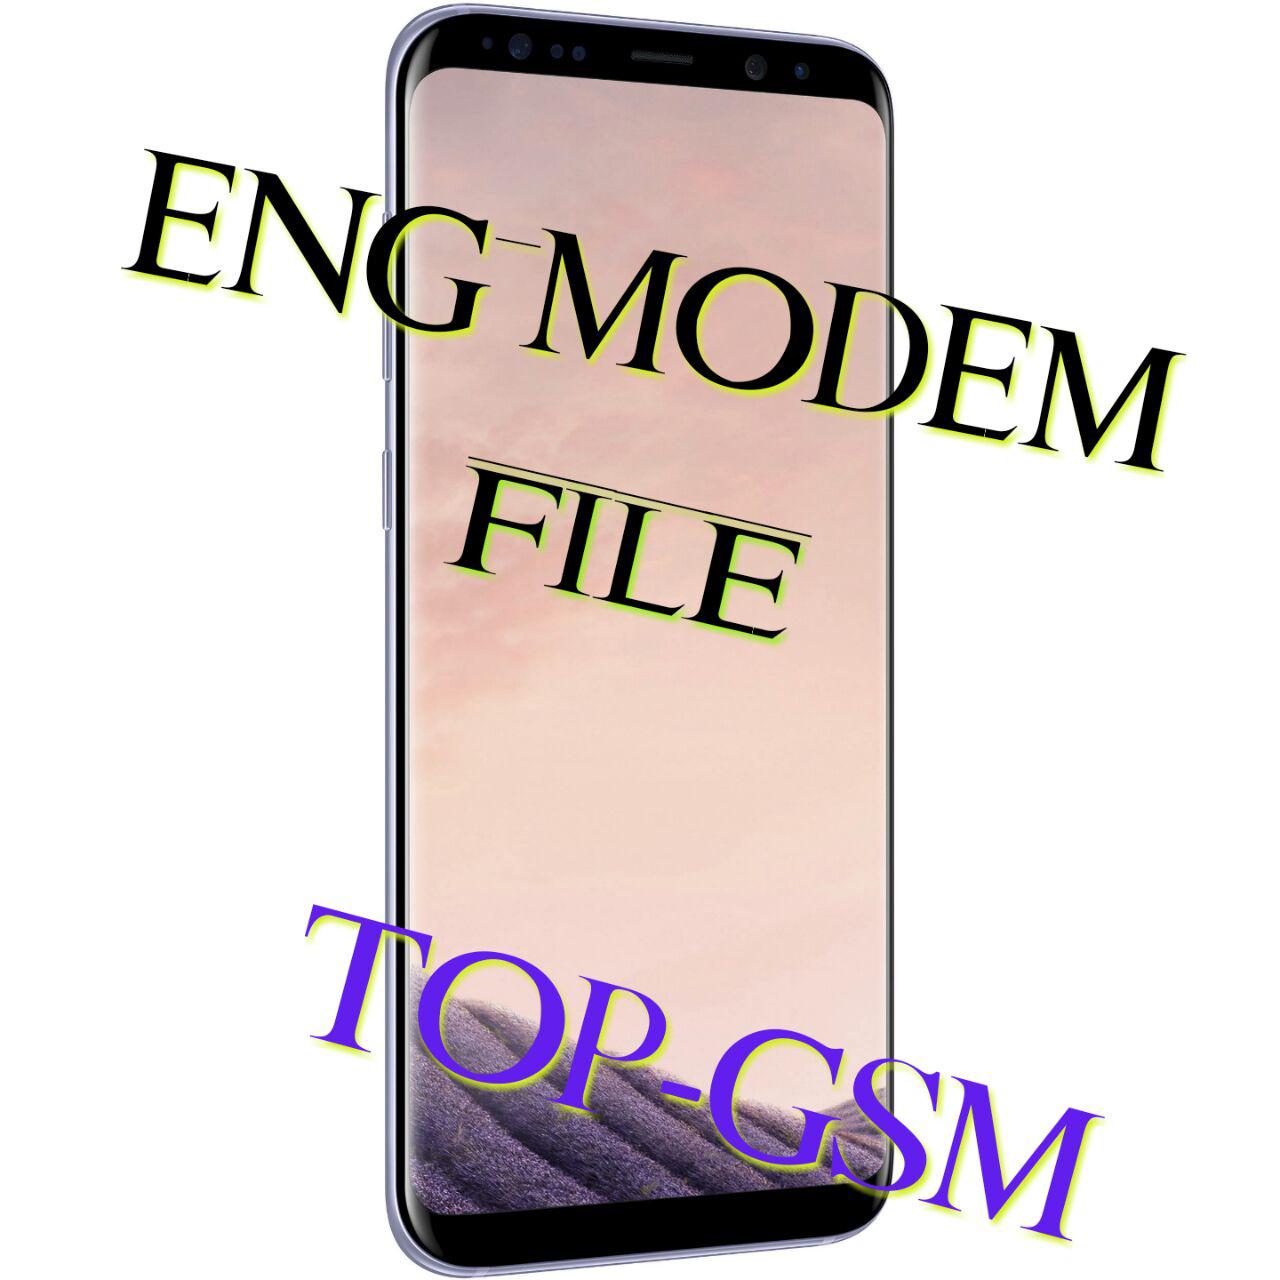 فایل ENG MODEM سامسونگ G925R-U3 حل مشکل سریال و بیسباند و…